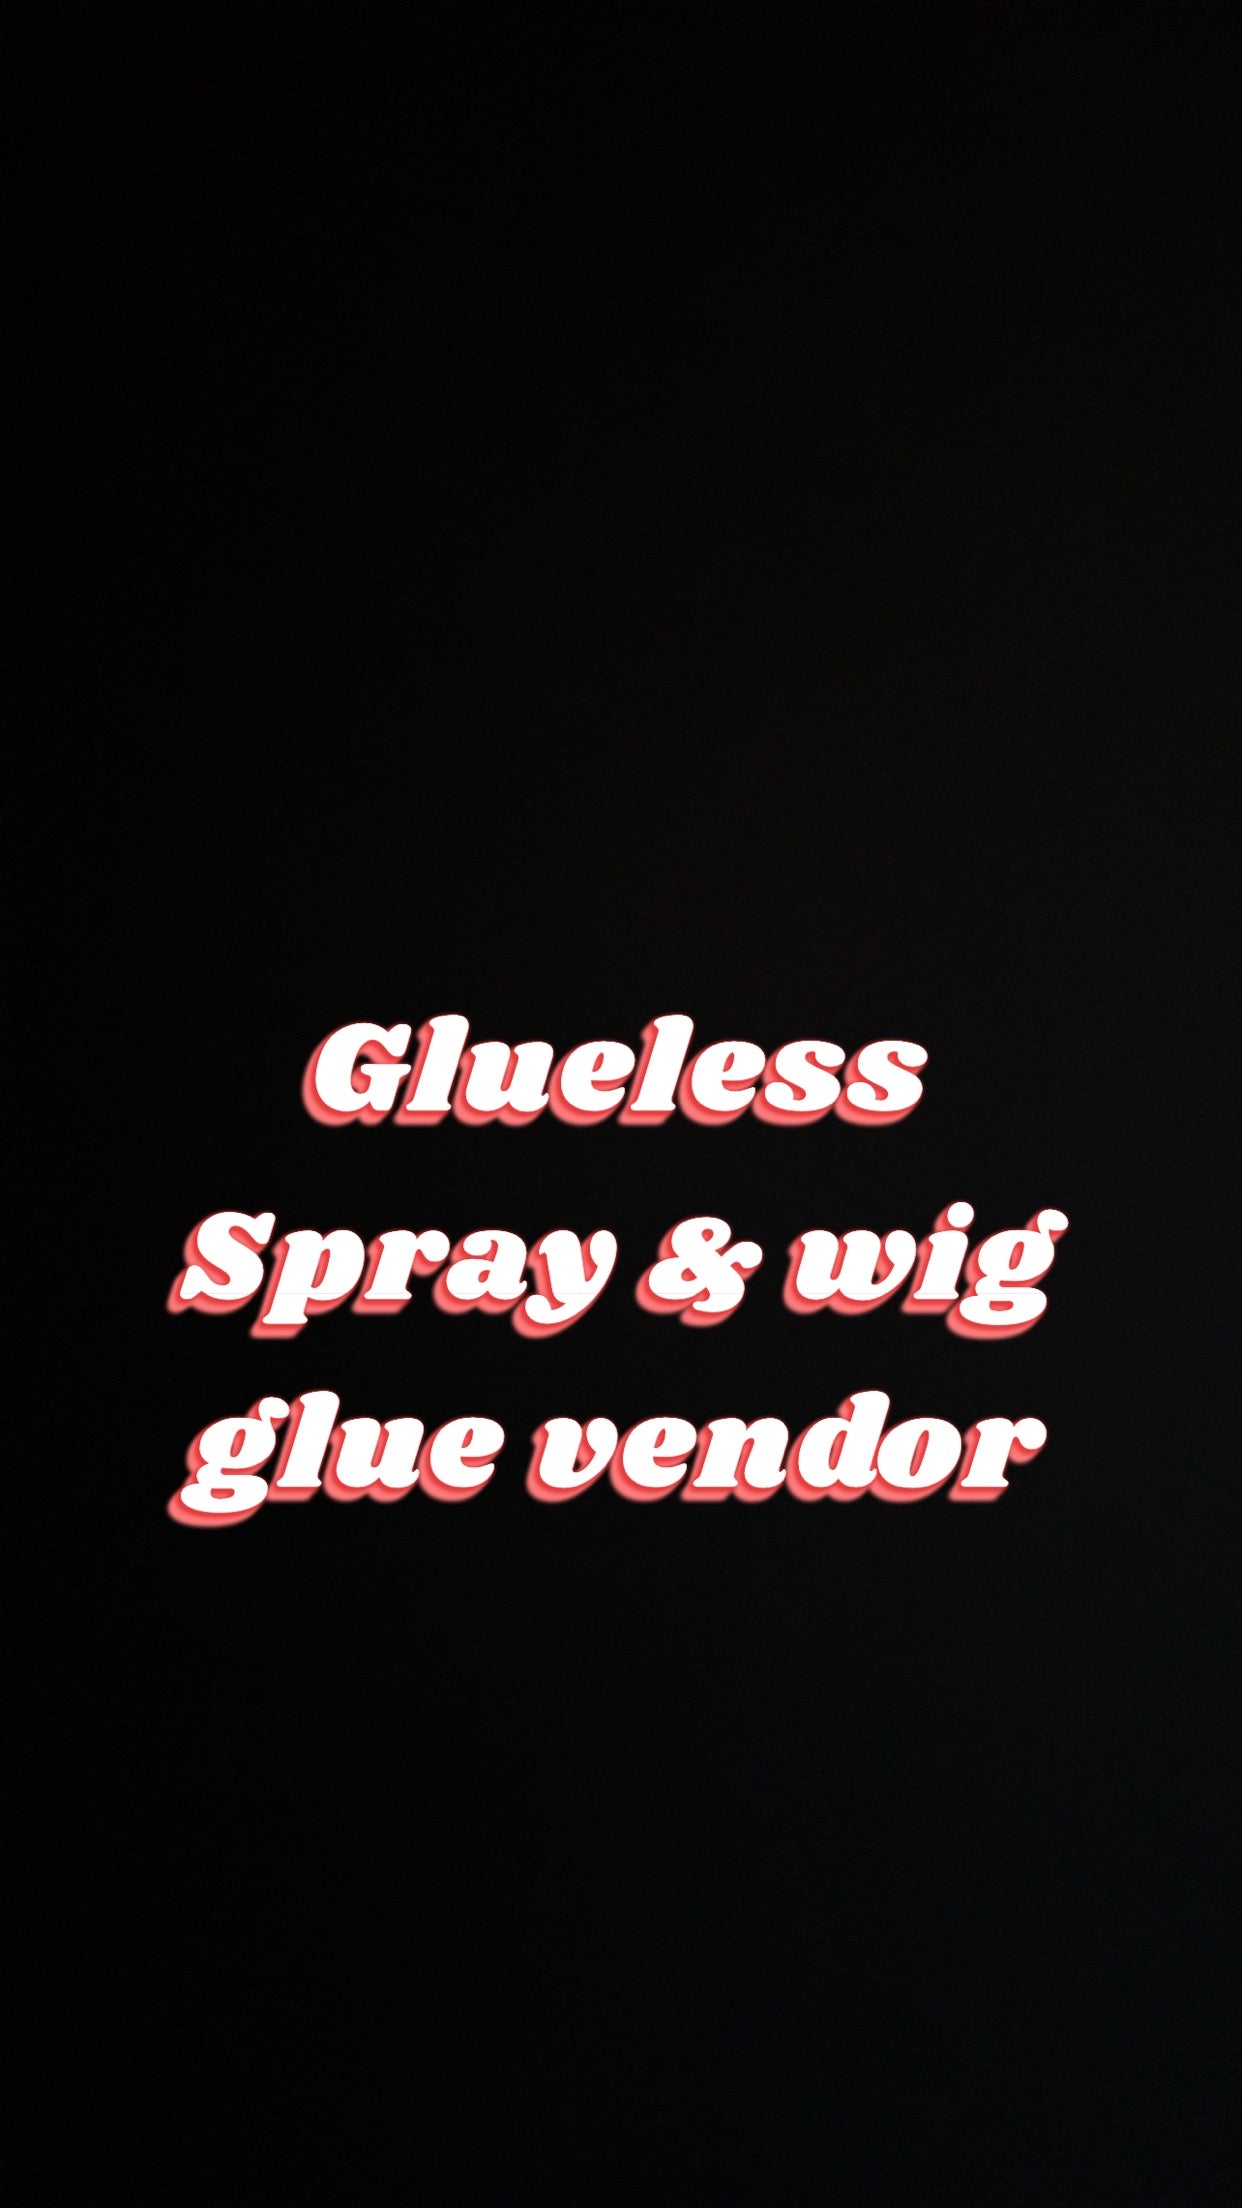 Glueless Spray & Wig Glue vendor contact